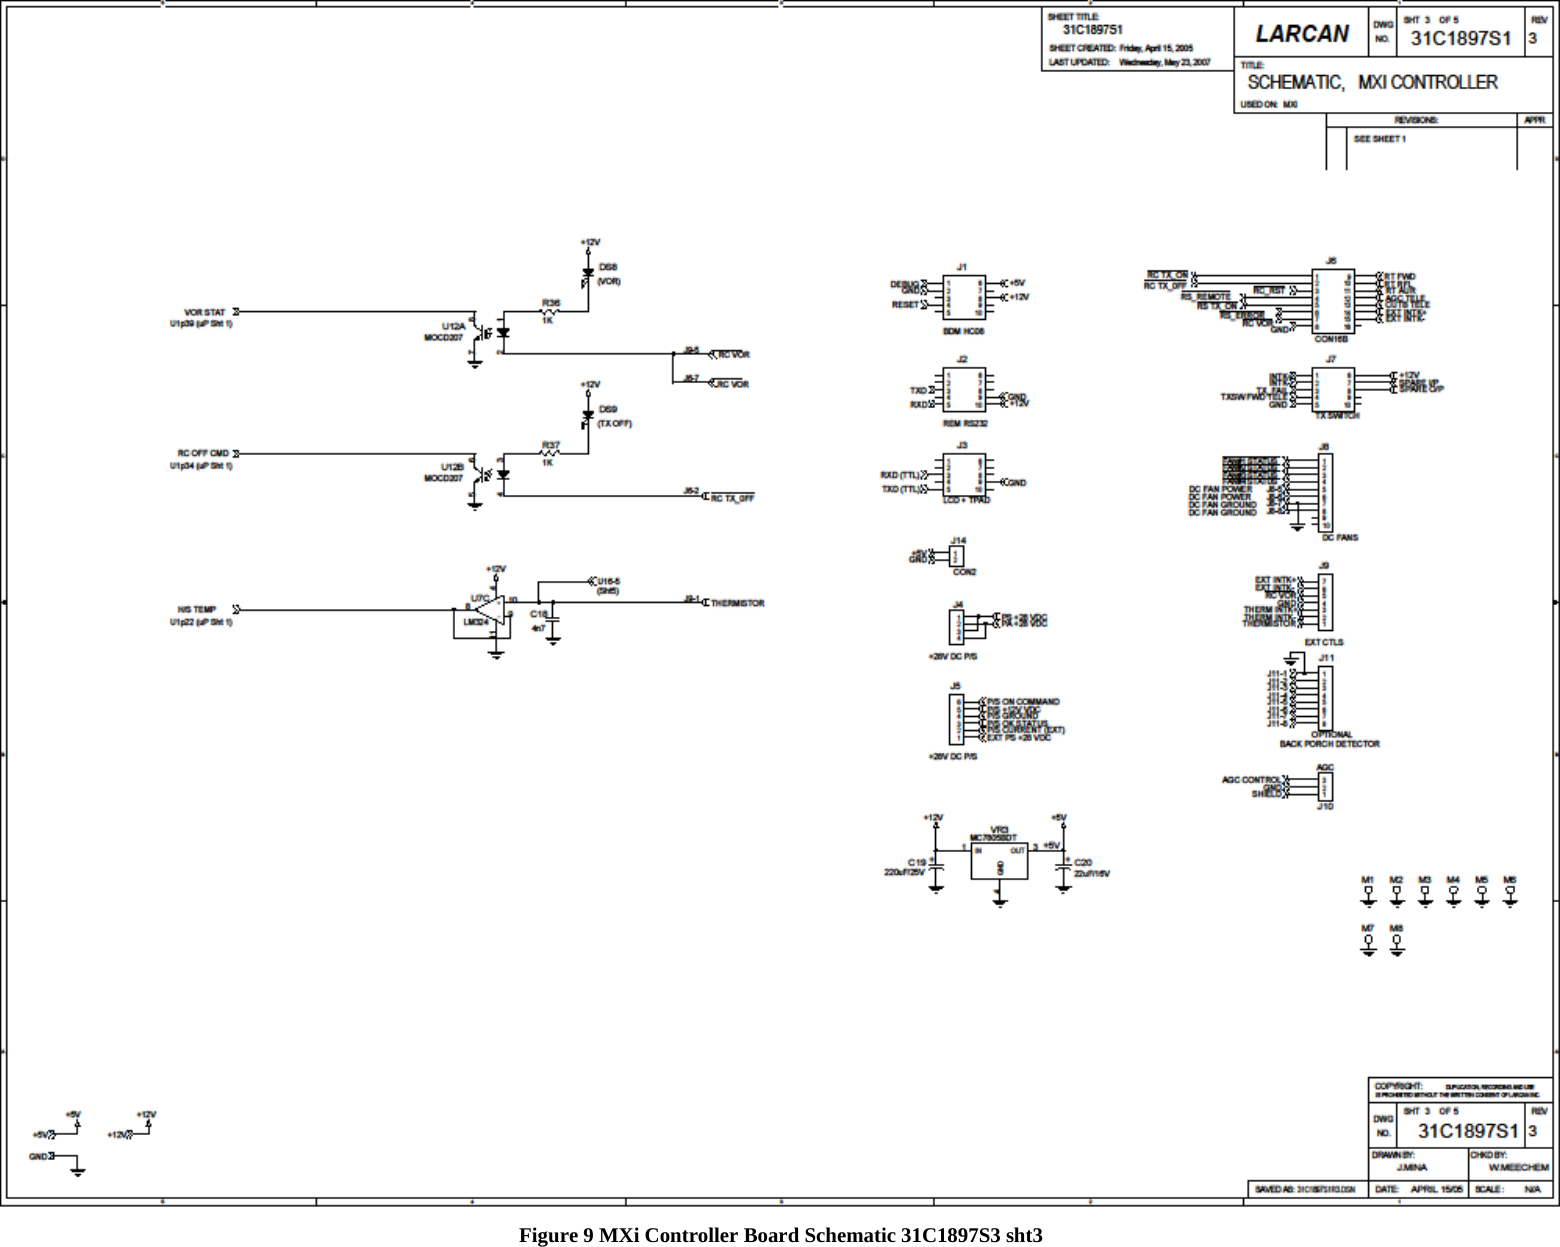   Figure 9 MXi Controller Board Schematic 31C1897S3 sht3   